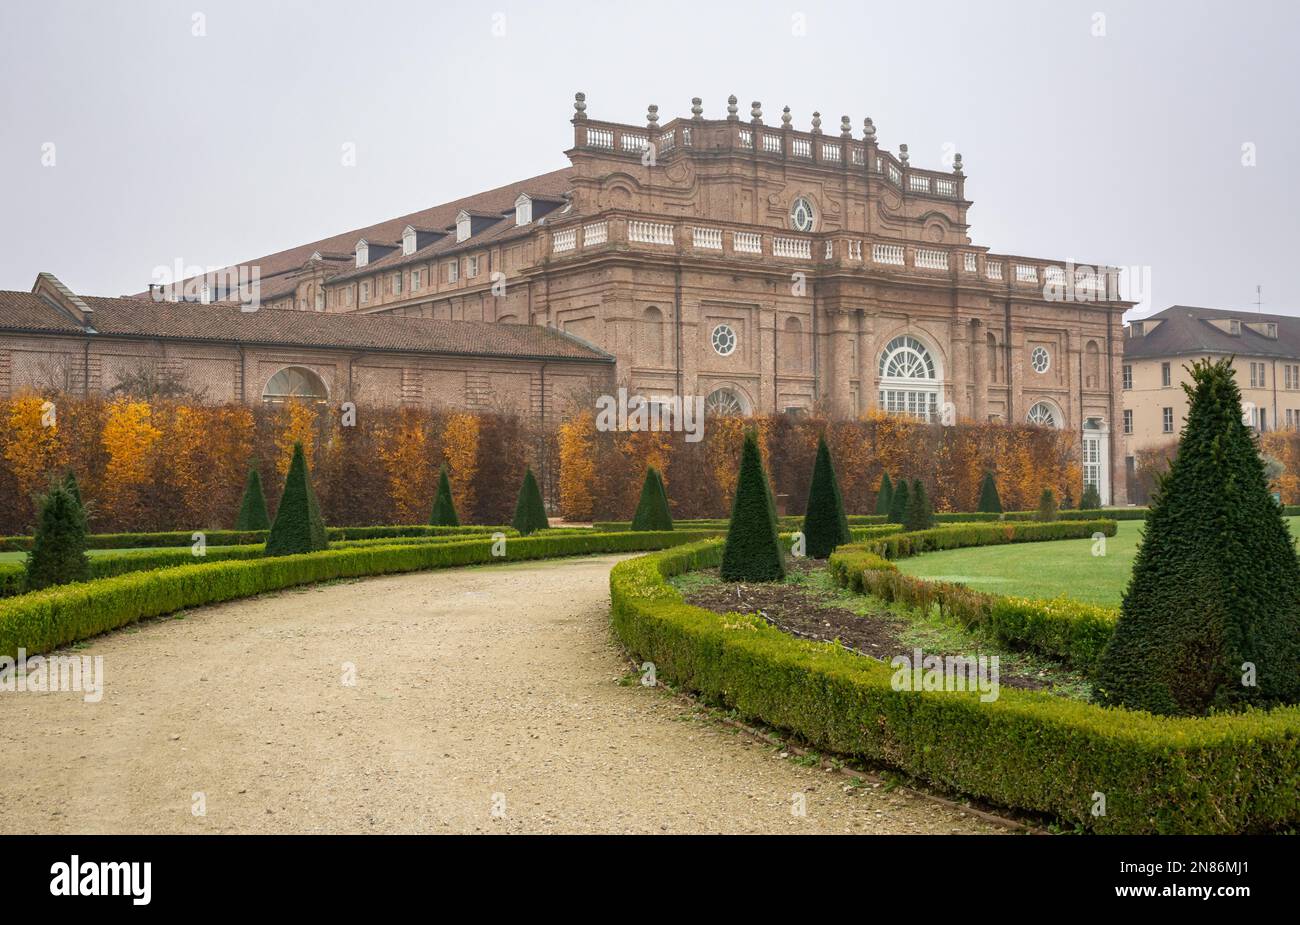 Il Palazzo di Venaria (in italiano Reggia di Venaria reale) è un'antica residenza reale e giardini situati a Venaria reale, nei pressi di Torino - Foto Stock